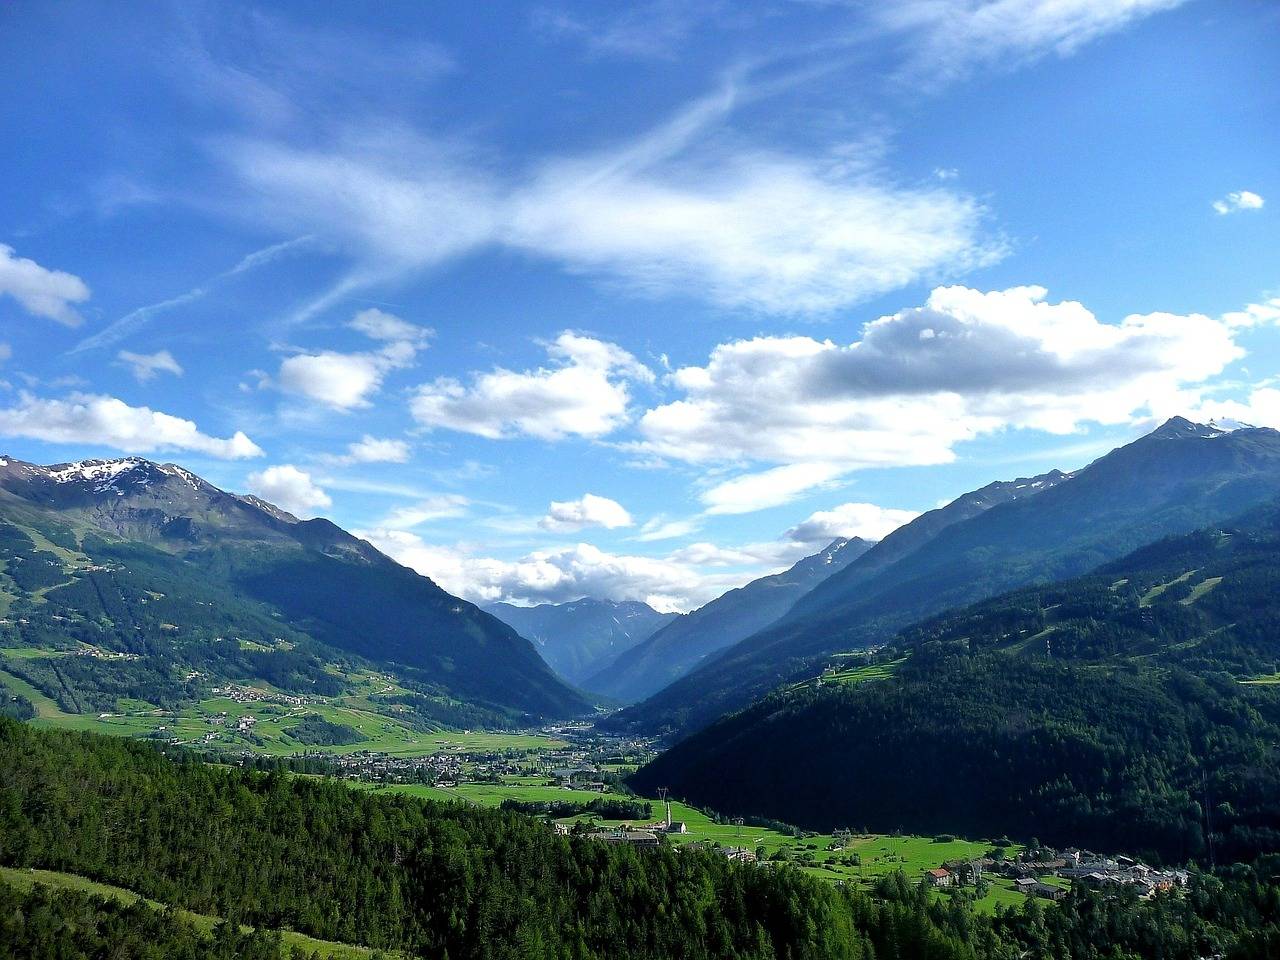 Le specialità culinarie di una valle che si sviluppa tra le Alpi